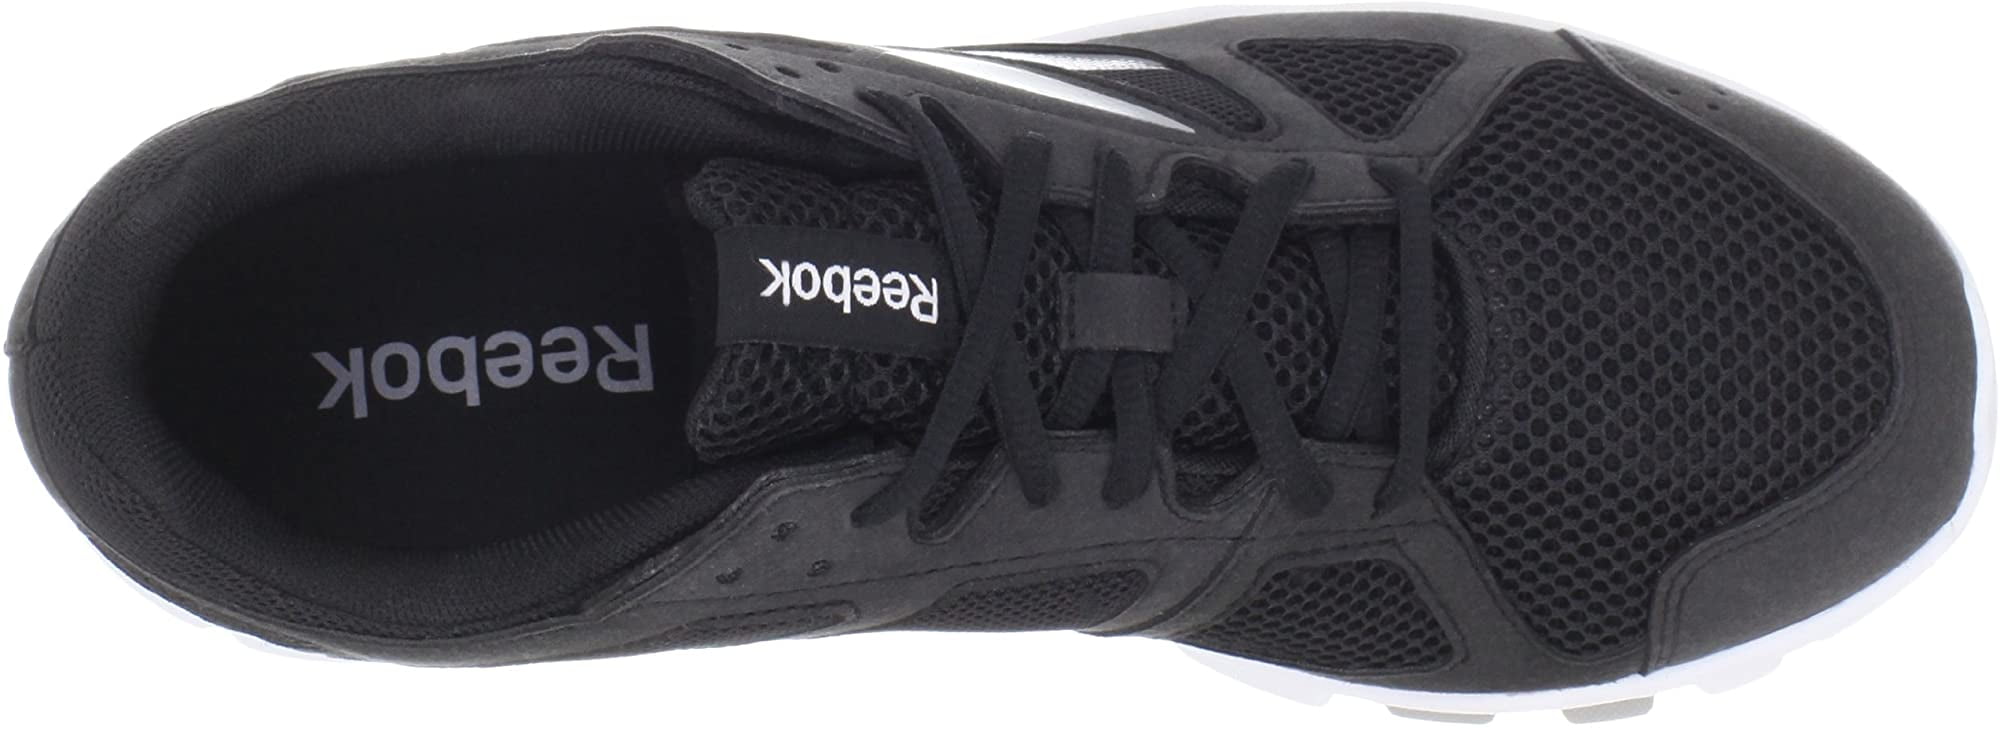 reebok men's yourflex train 2.0 cross-training shoe